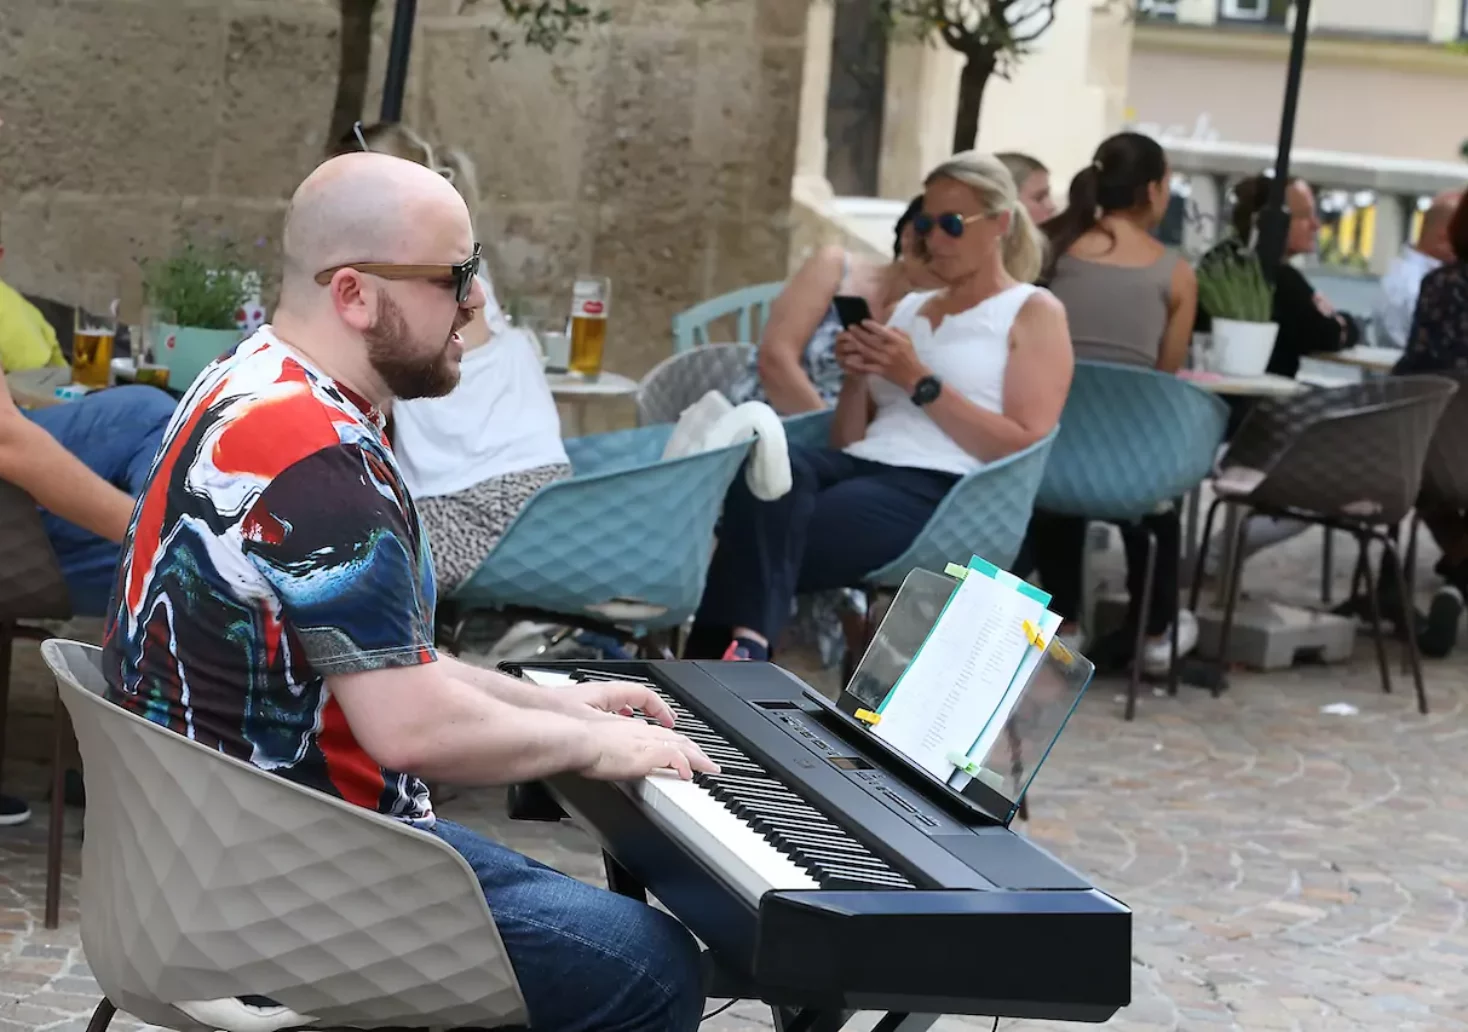 Foto auf 5min.at zeigt einen Mann, der im Freien auf einem Keyboard spielt.